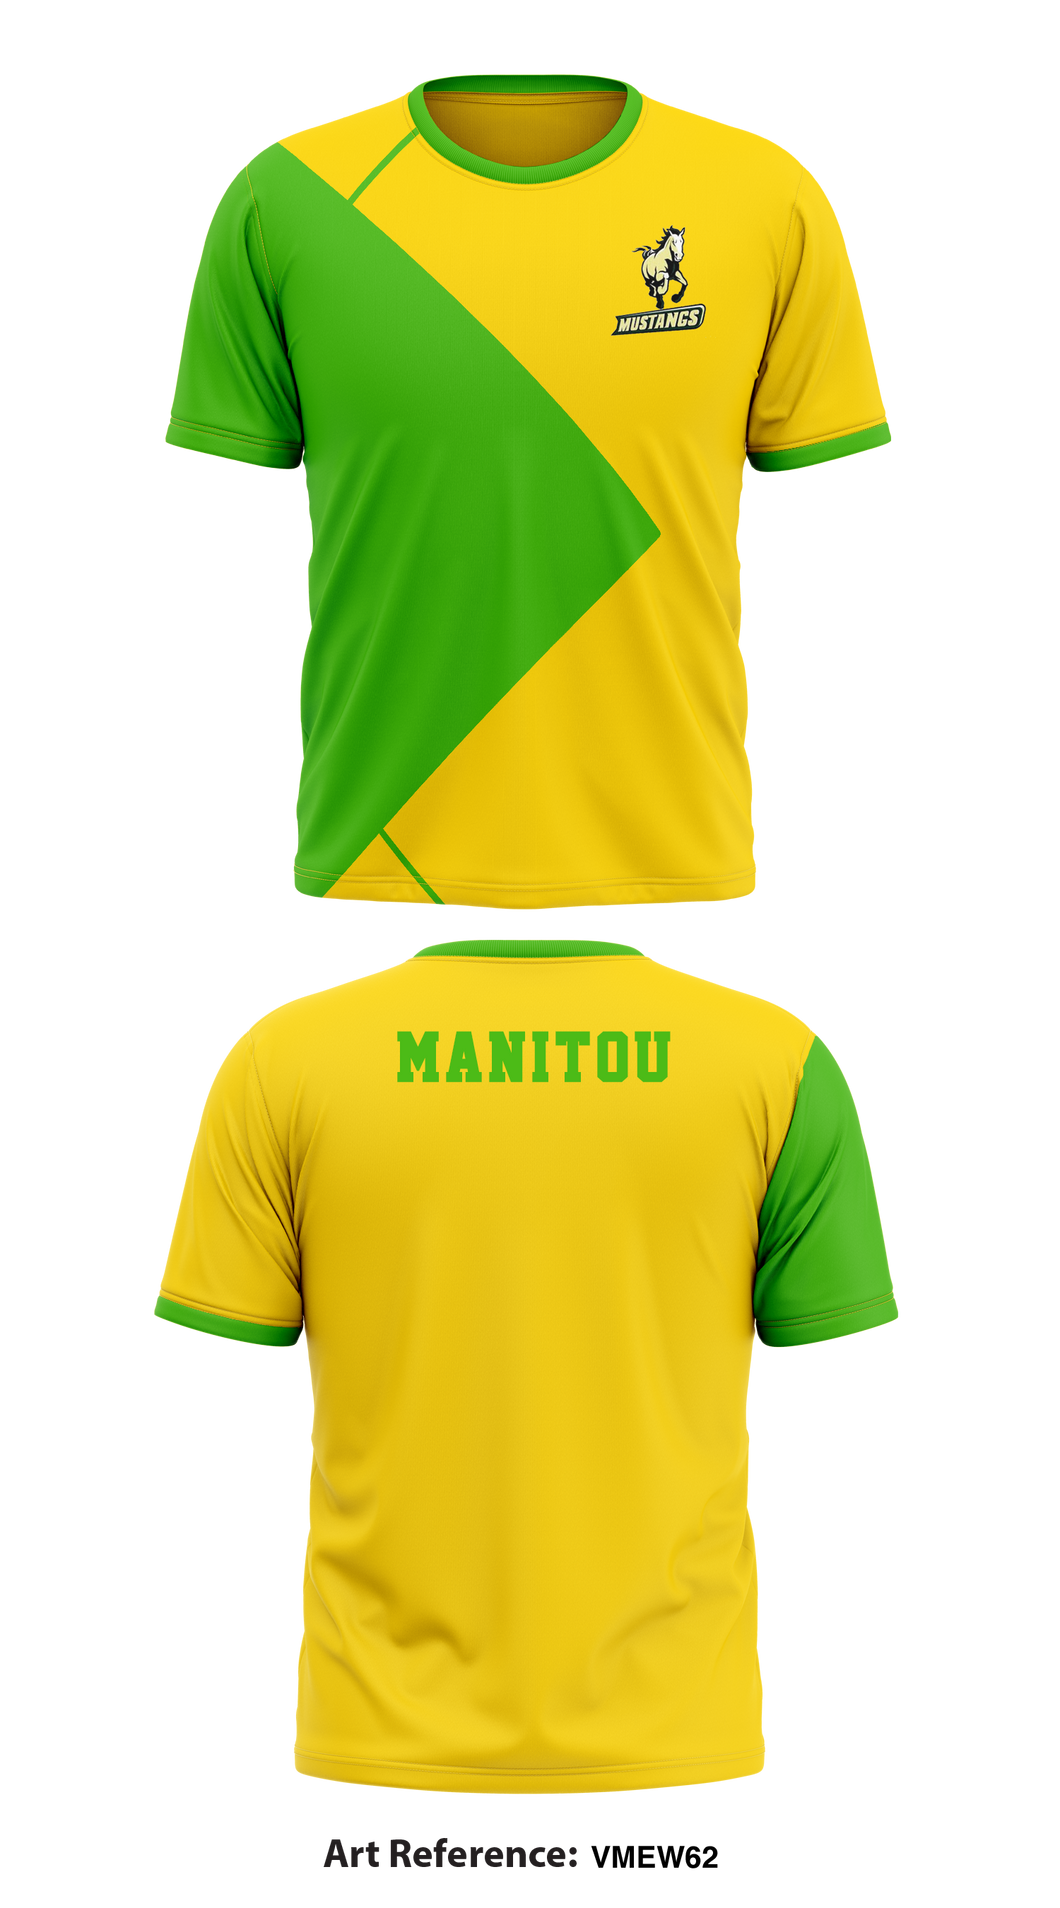 Manitou 55412562 Short Sleeve Performance Shirt - 1